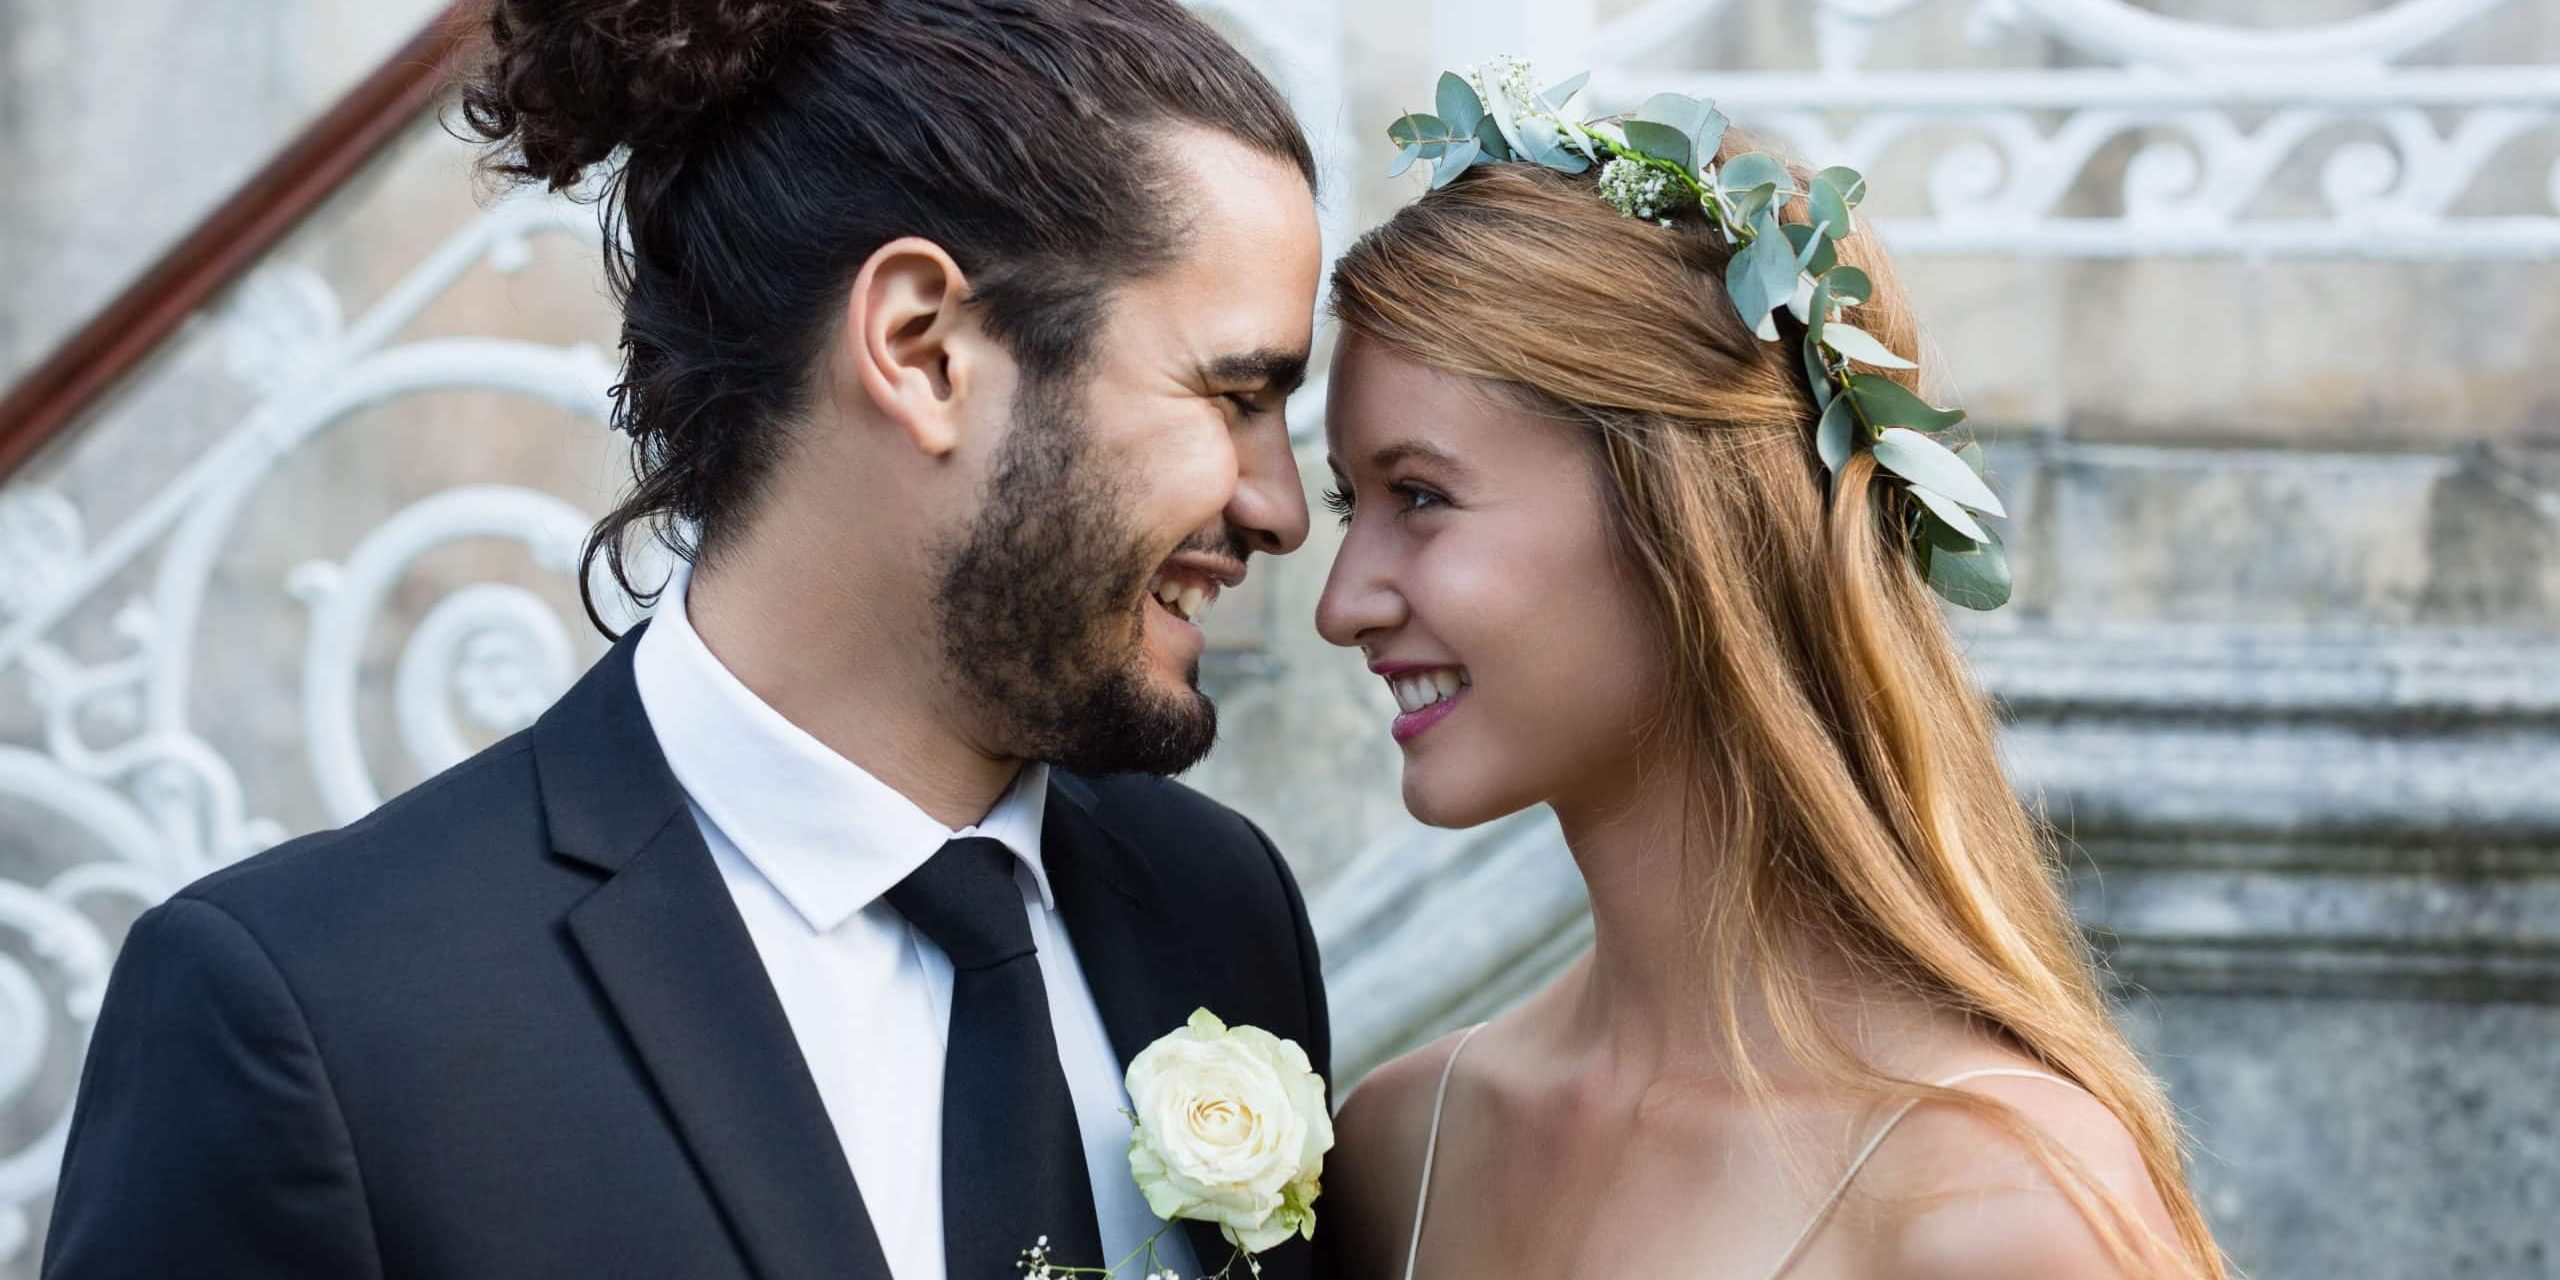 Hochzeitspaar (Mann mit haarband-fixiertem Haar mit hübscher langhaariger Braut